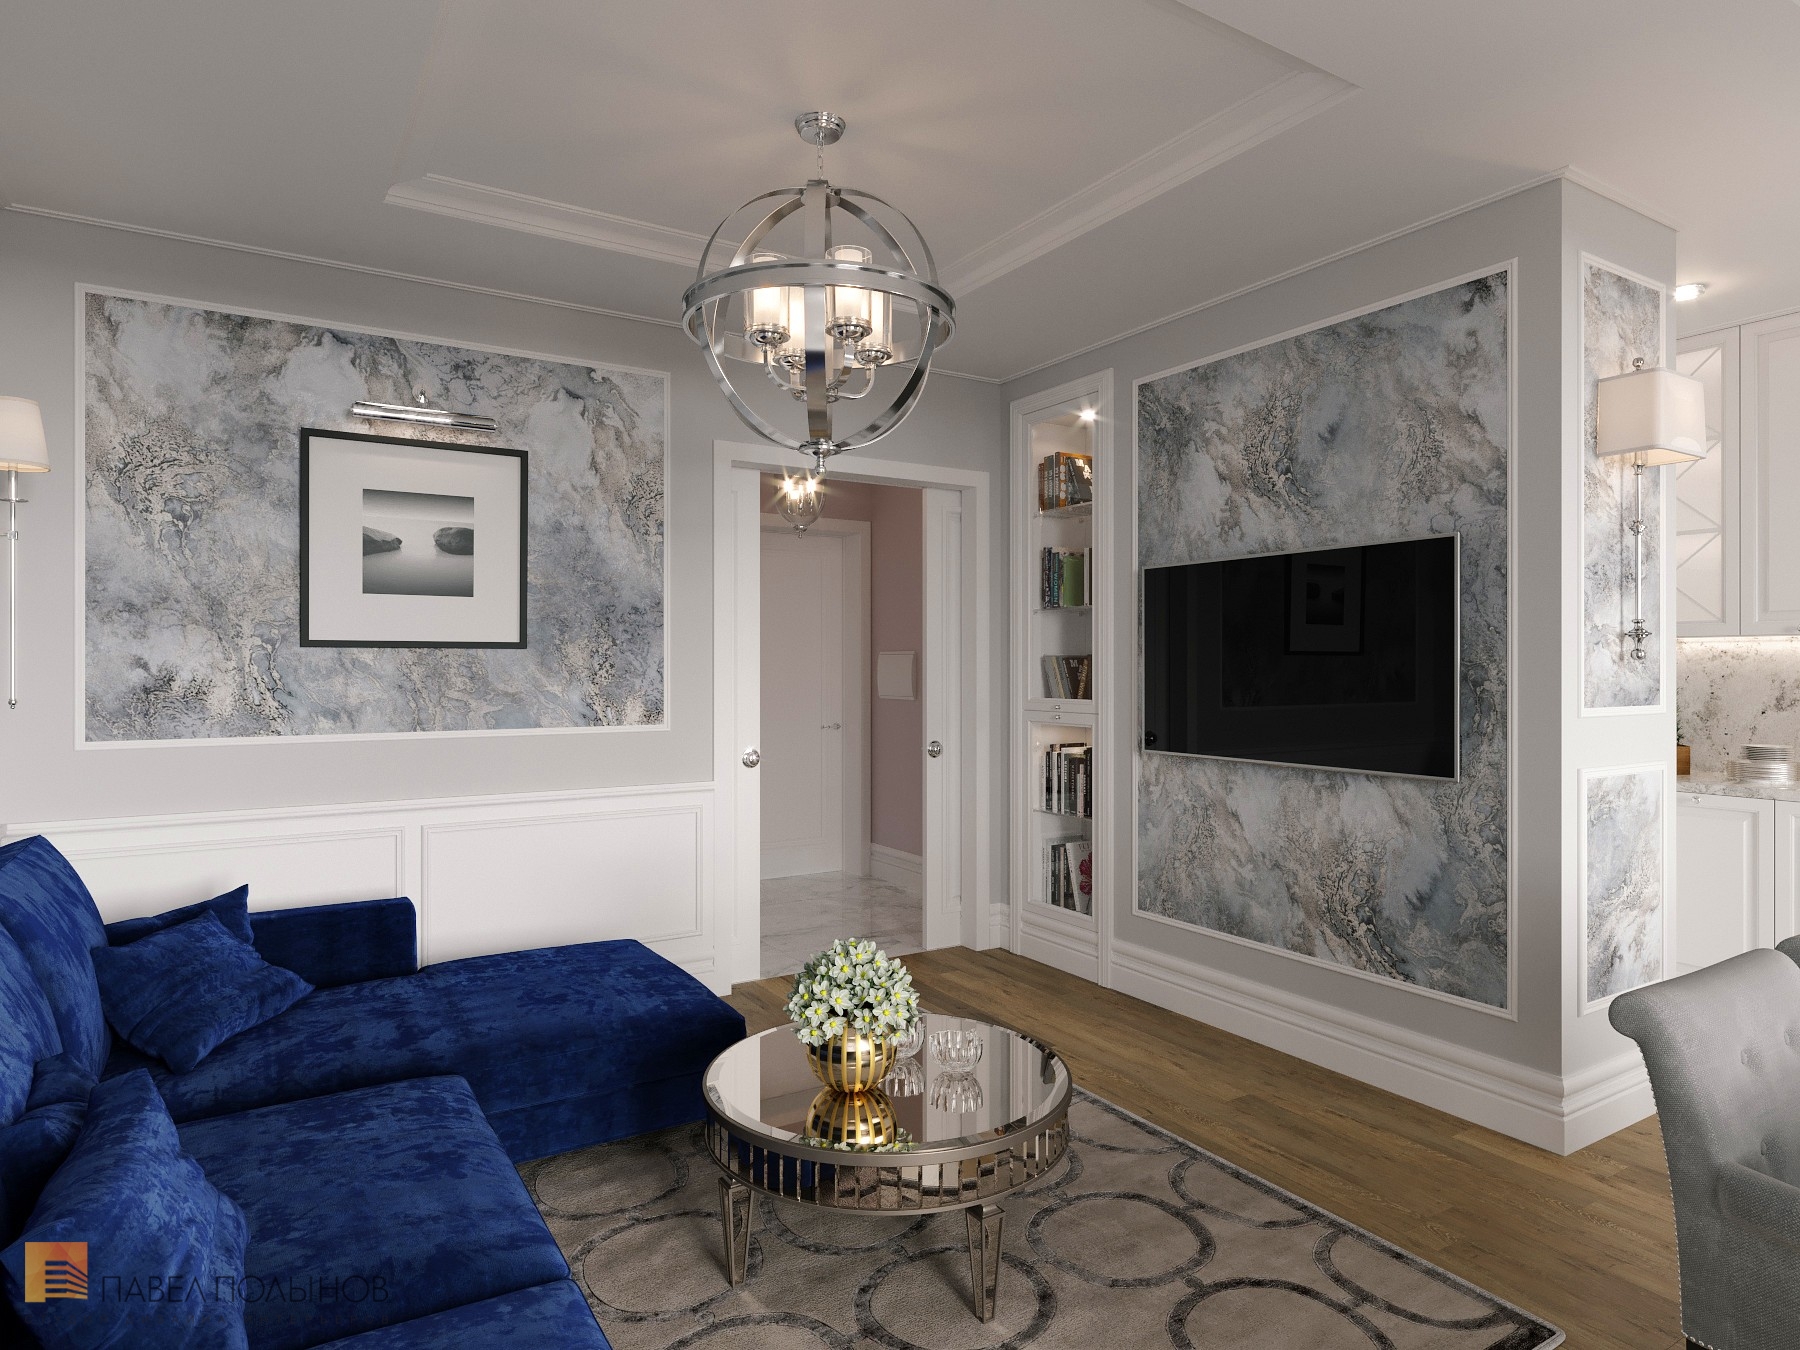 Фото дизайн интерьера гостиной из проекта «Интерьер квартиры в стиле неоклассика в ЖК «The Residence», 219 кв.м.»